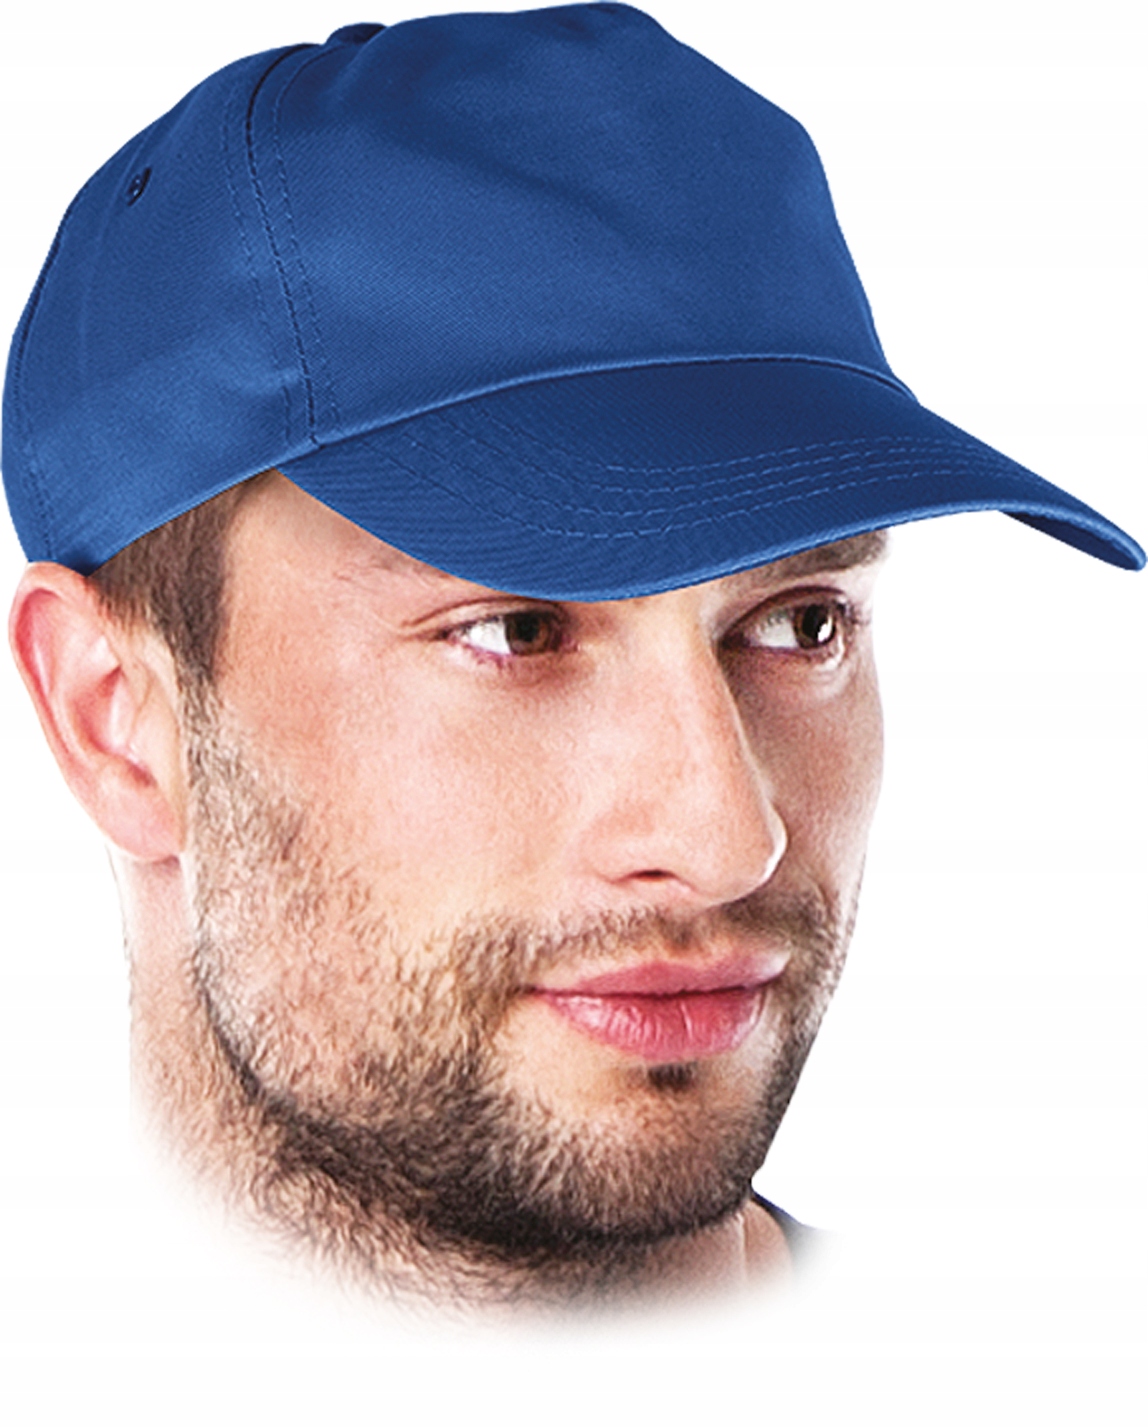 čiapka s ochranným šiltom modrá so zapínaním na suchý zips ideálna na zdobenie